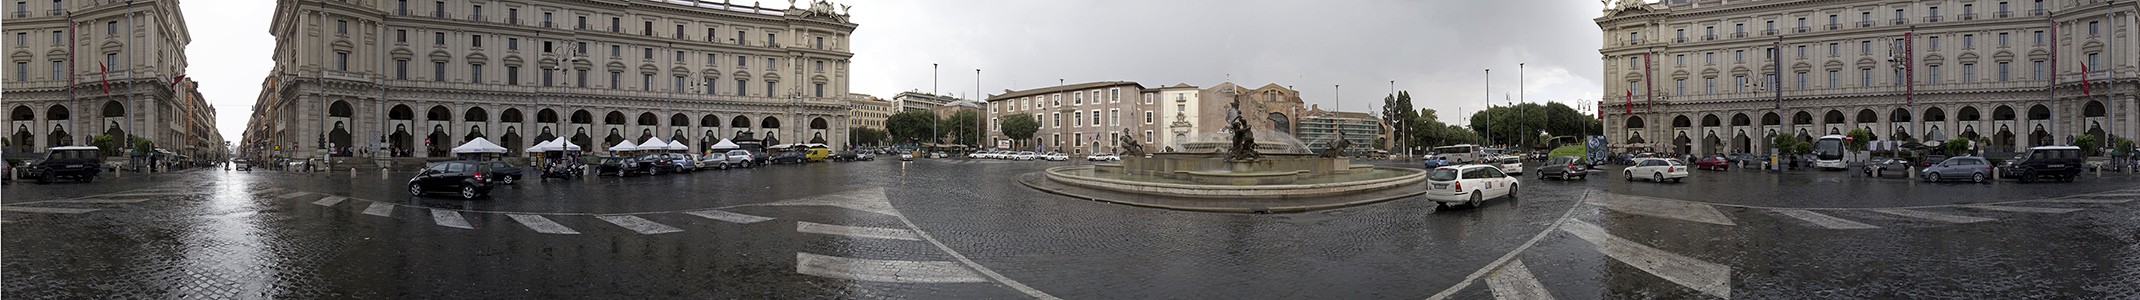 Piazza della Repubblica mit dem Najaden-Brunnen (Fontana delle Naiadi) Rom